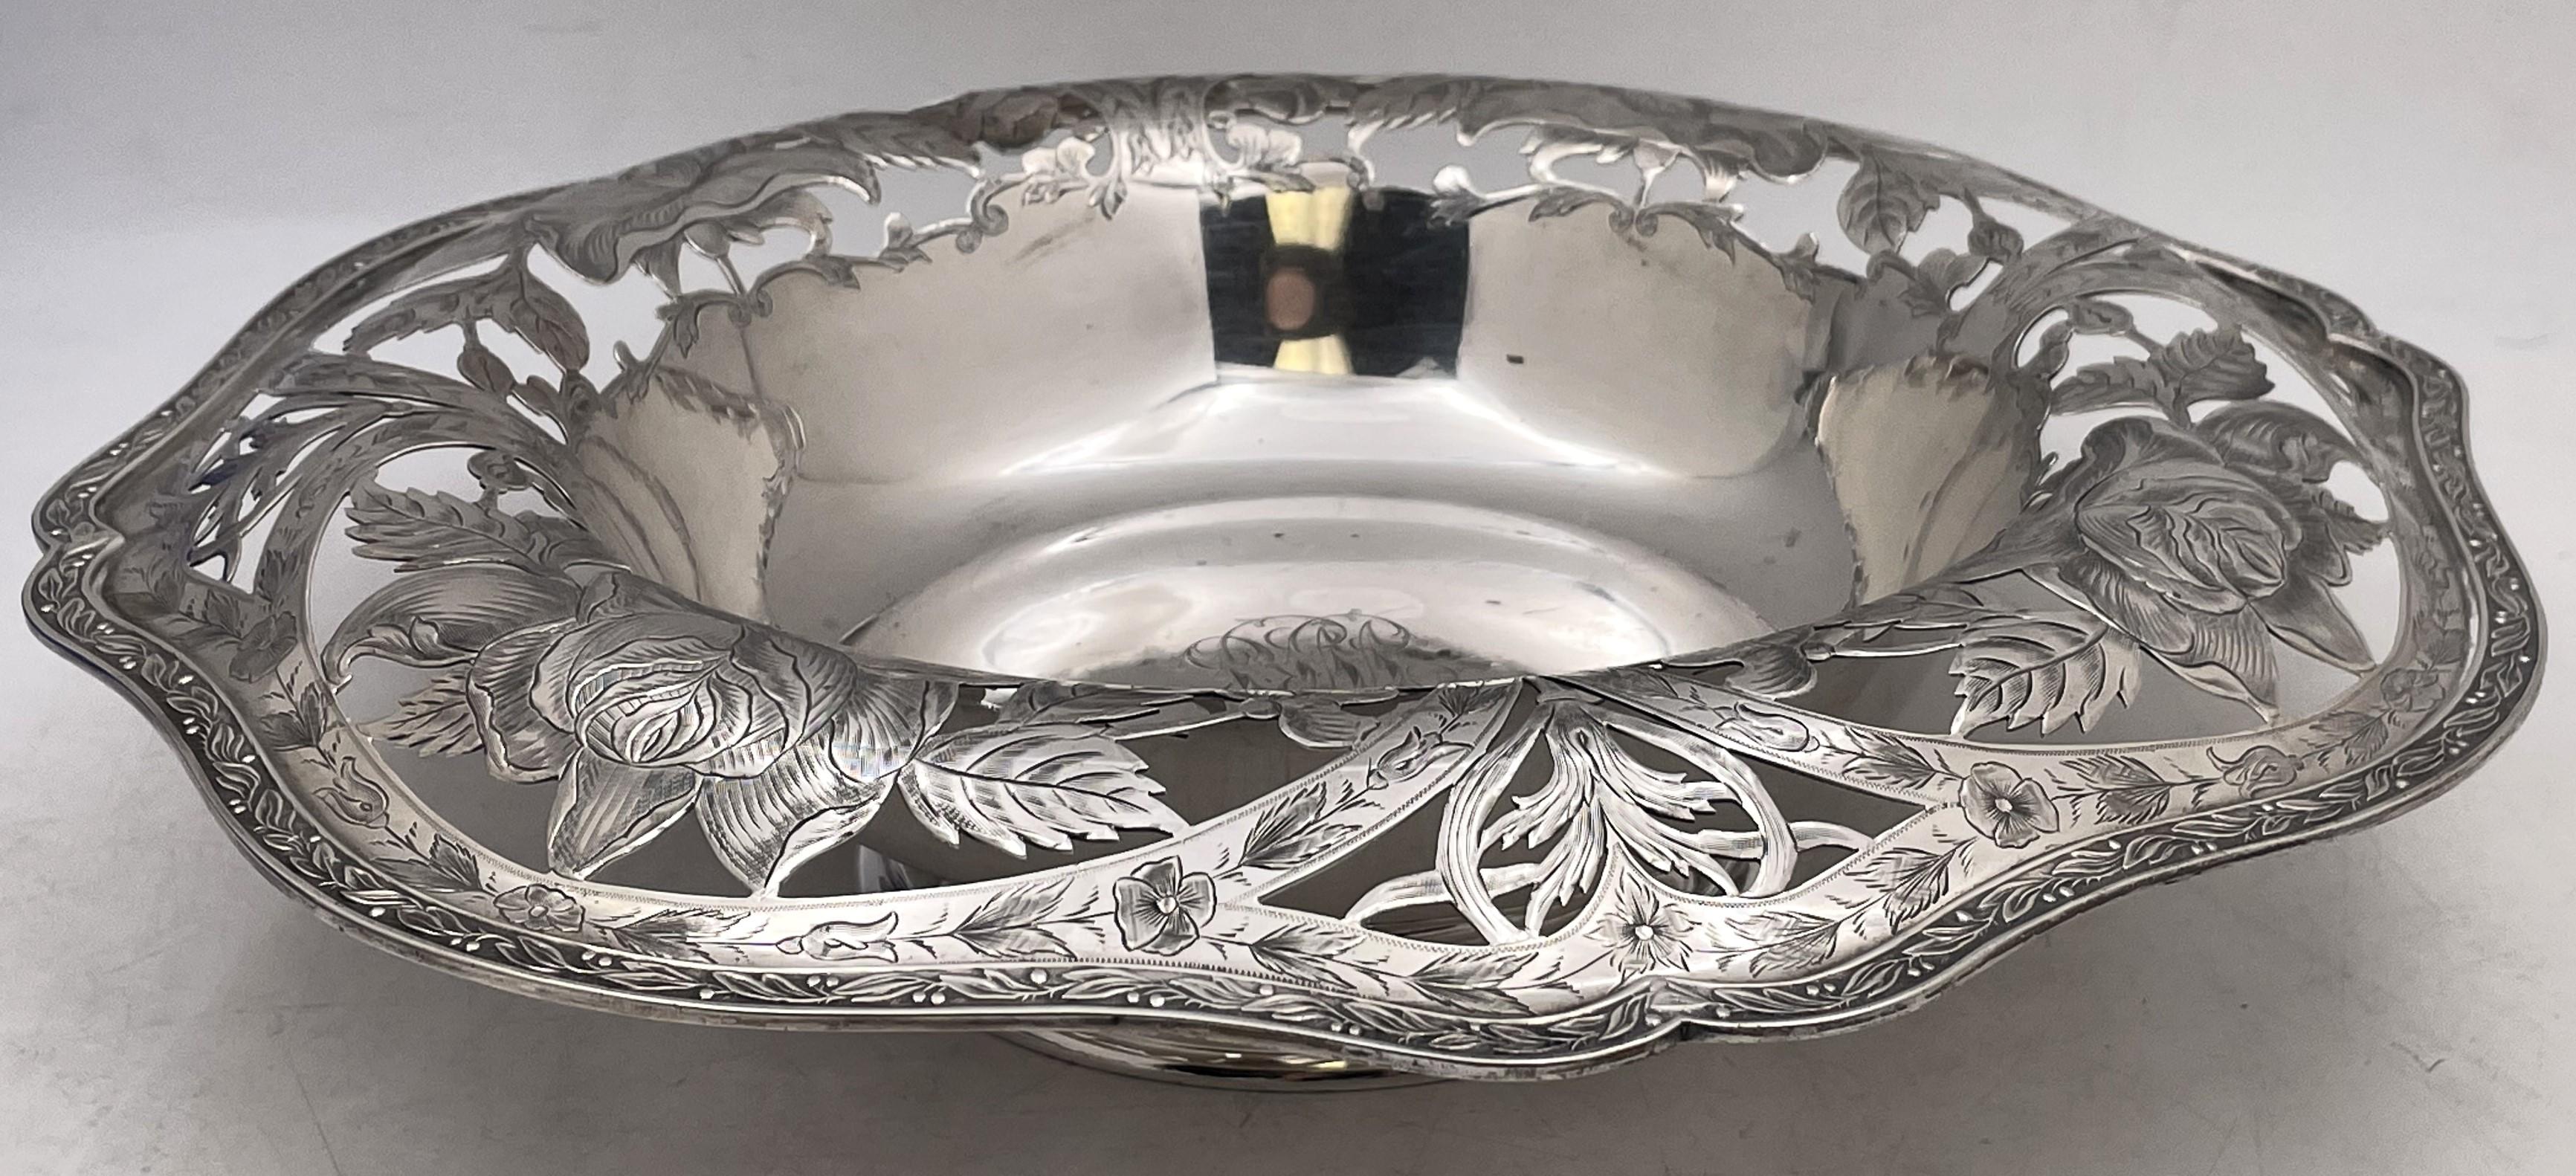 Coupe centrale en argent sterling LudwiRedlich du début des années 1890 avec un bord percé orné de motifs floraux dans le style Art nouveau. Il mesure 12 7/8'' de diamètre (diamètre intérieur 7 7/8'') par 3 1/4'' de hauteur, pèse 26 onces troy, et